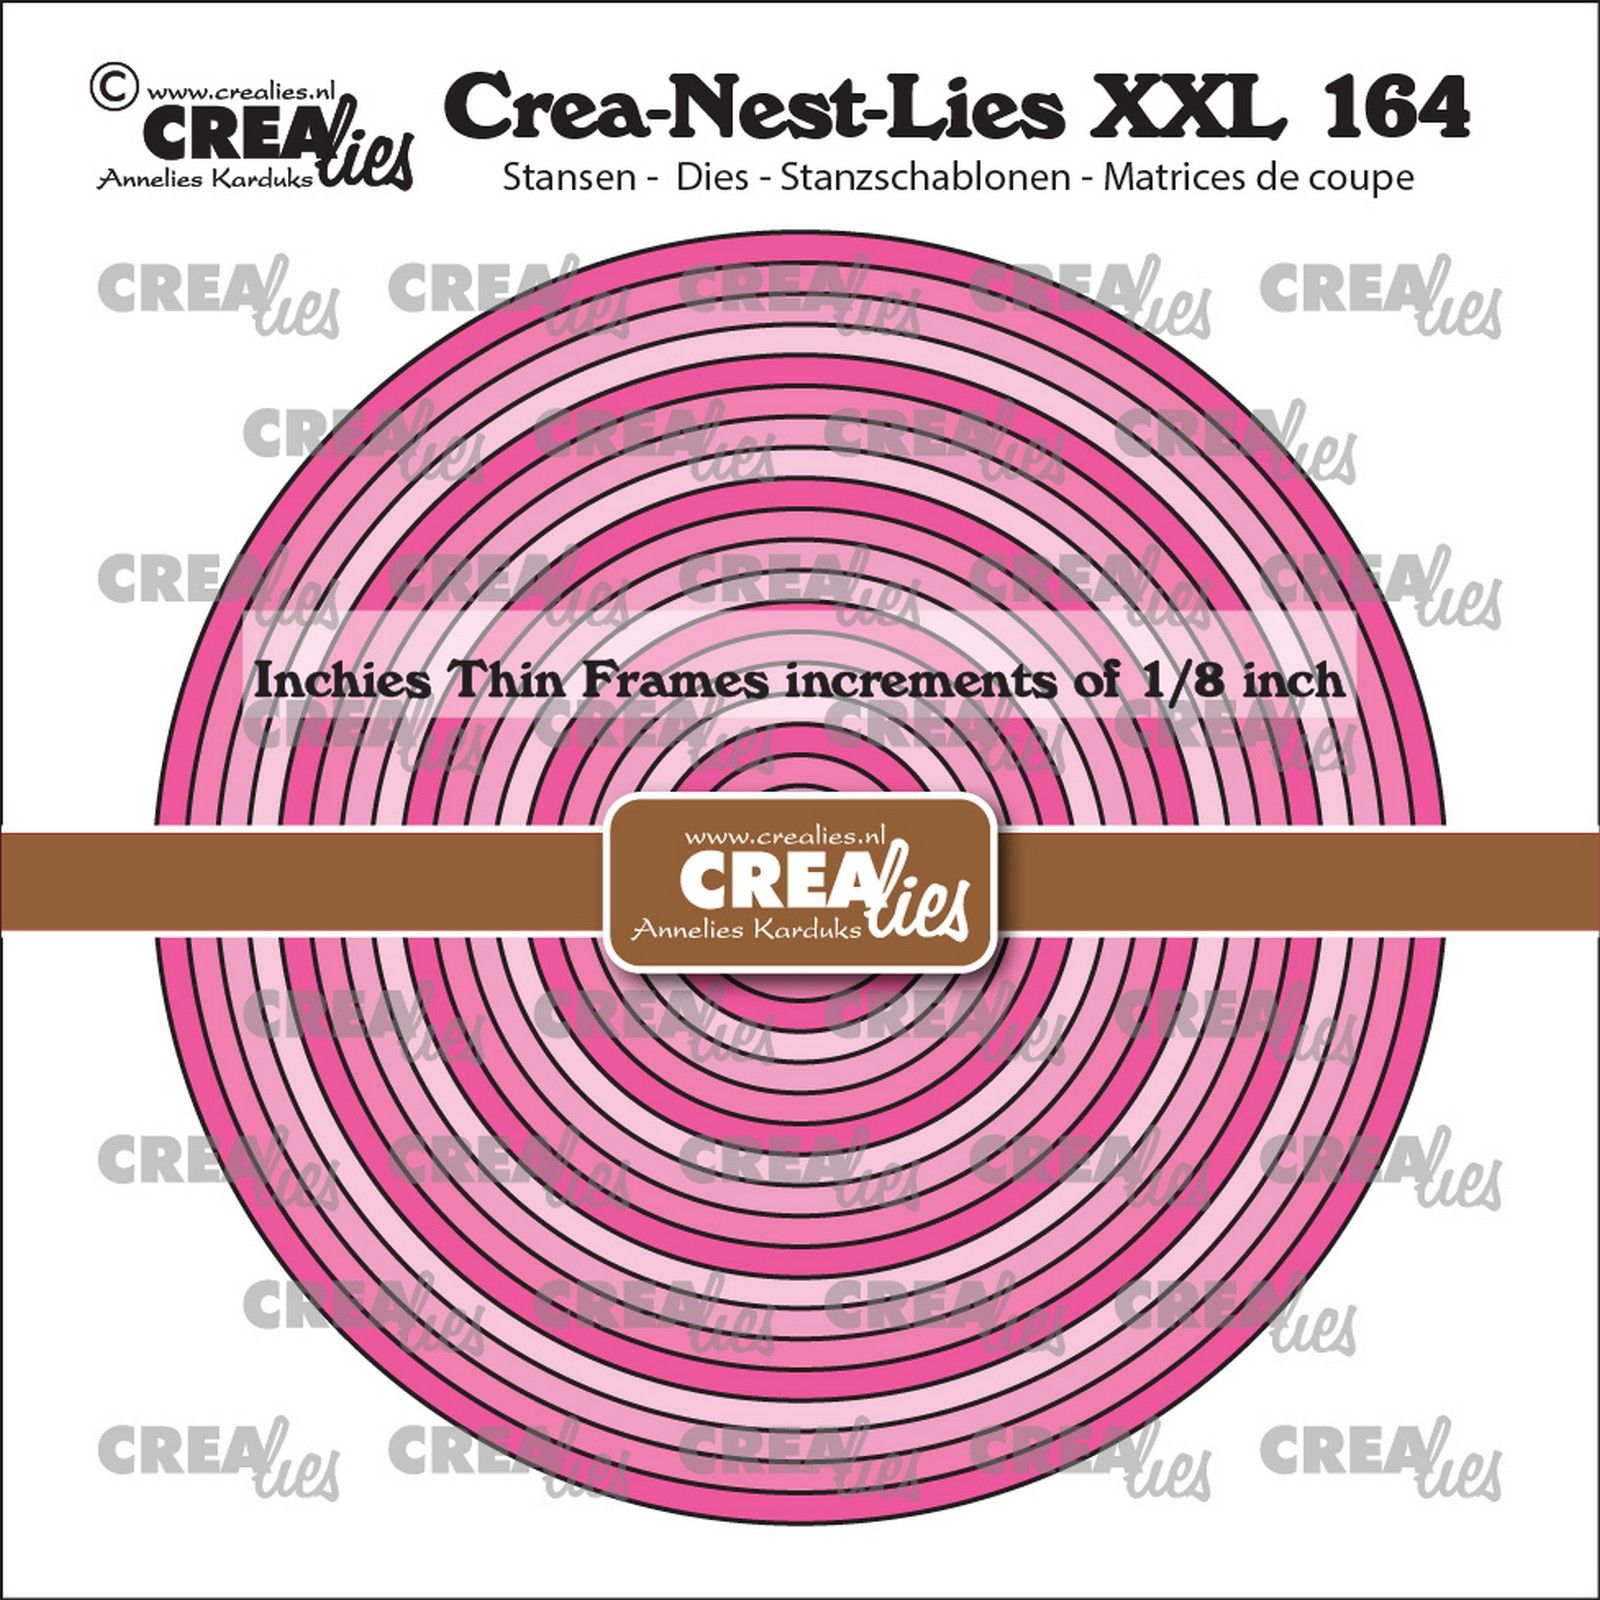 Crealies • Crea-Nest-Lies XXL Inchies Cirkels Dunne Kaders